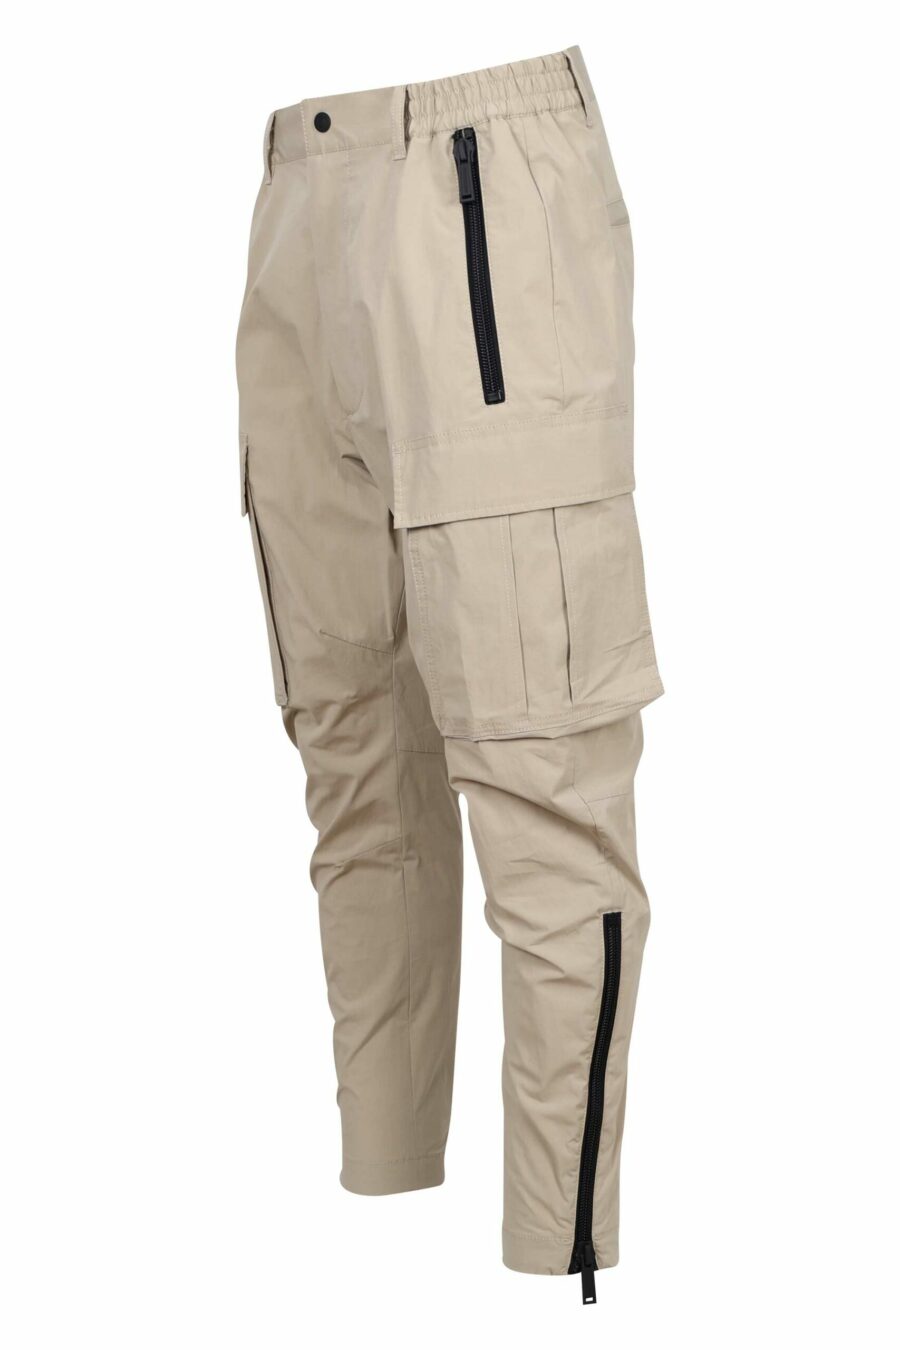 Pantalon cargo beige avec zips latéraux "D2 sexy cargo" - 8054148388041 1 à l'échelle